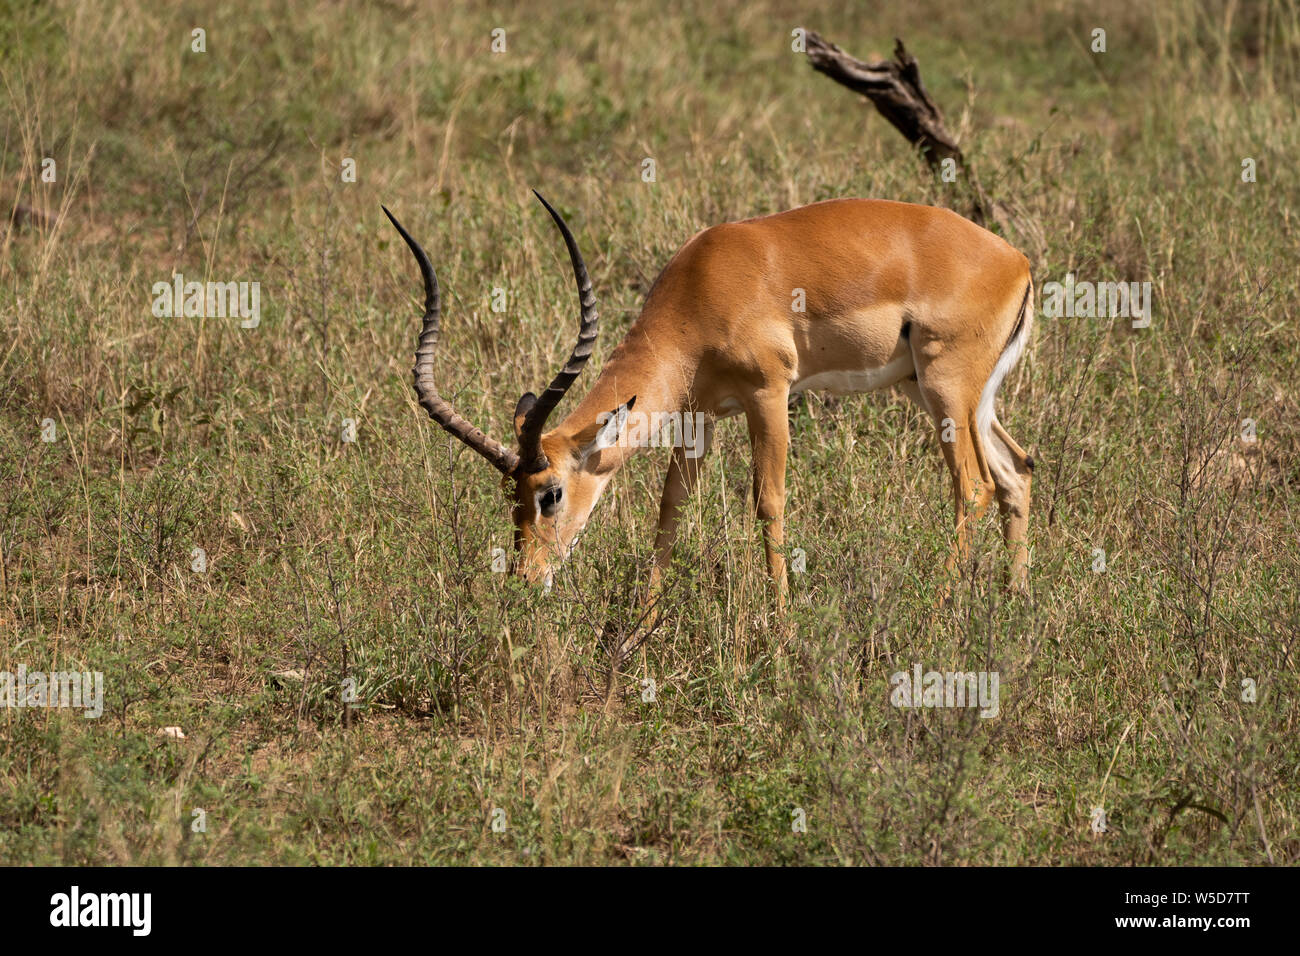 Impala maschio (Aepyceros melampus) al pascolo. Solo il maschio possiede la s-corna. Fotografato a Parco Nazionale del Serengeti, Tanzania. Foto Stock